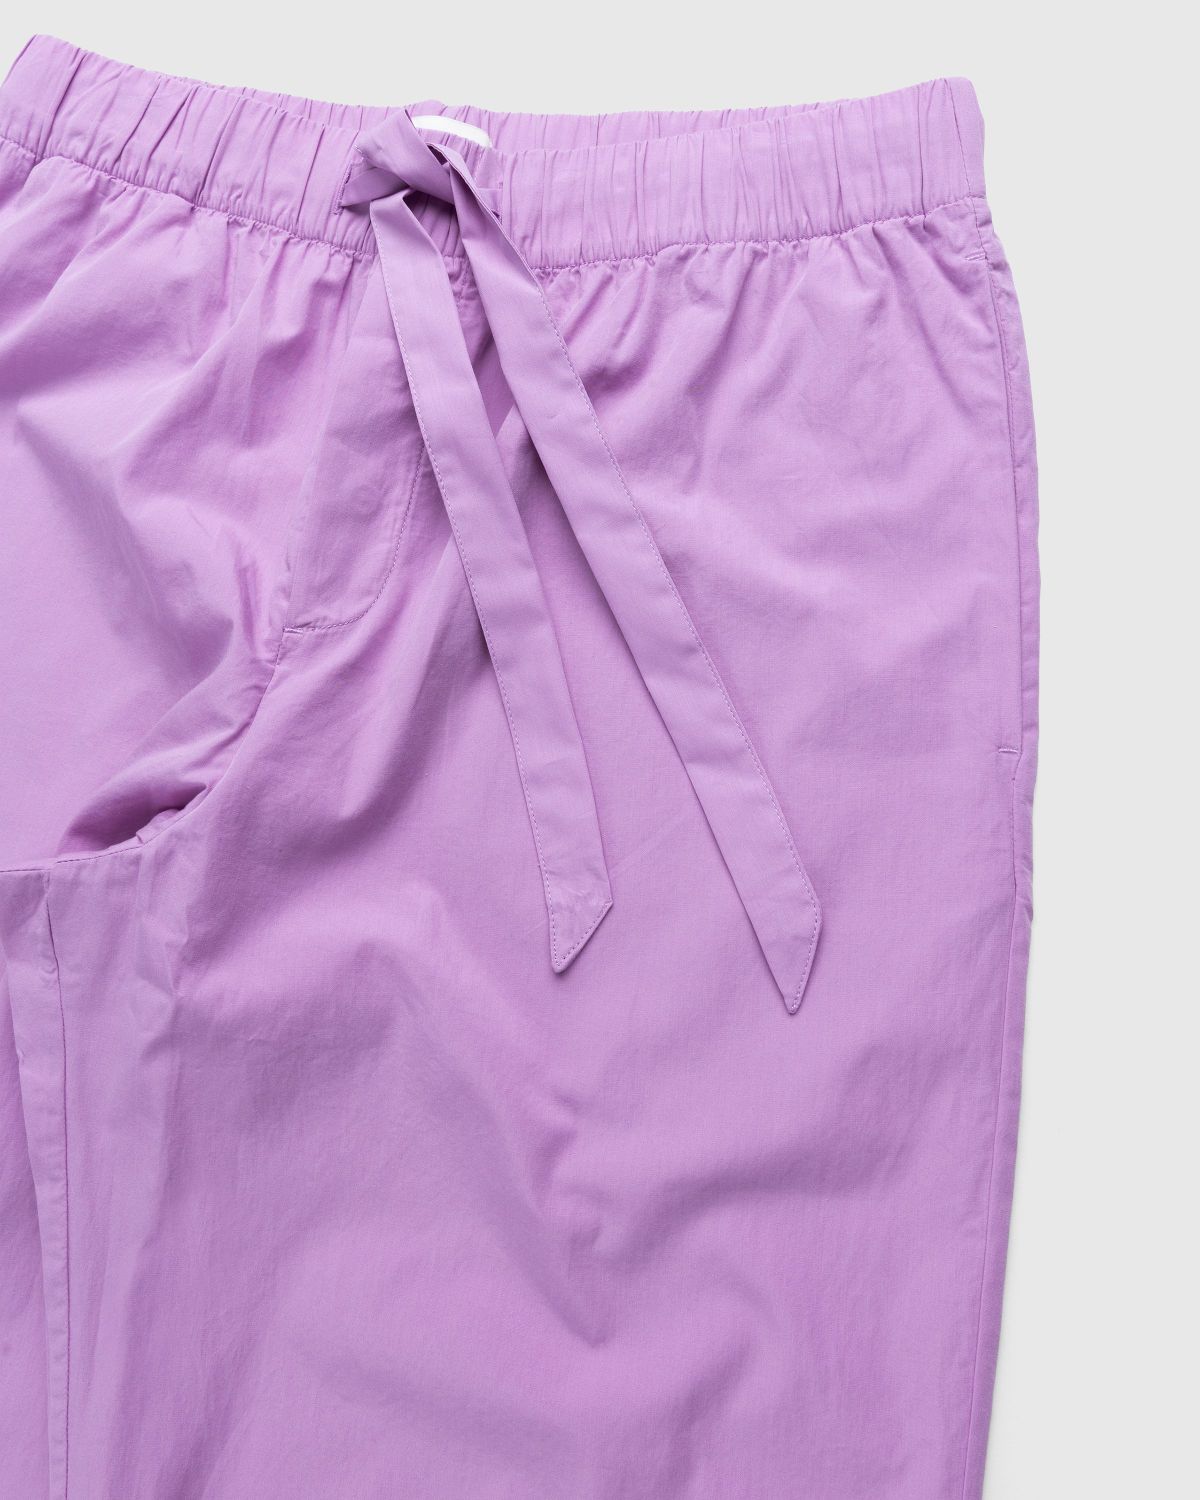 Tekla – Cotton Poplin Pyjamas Pants Purple Pink - Pyjamas - Pink - Image 3